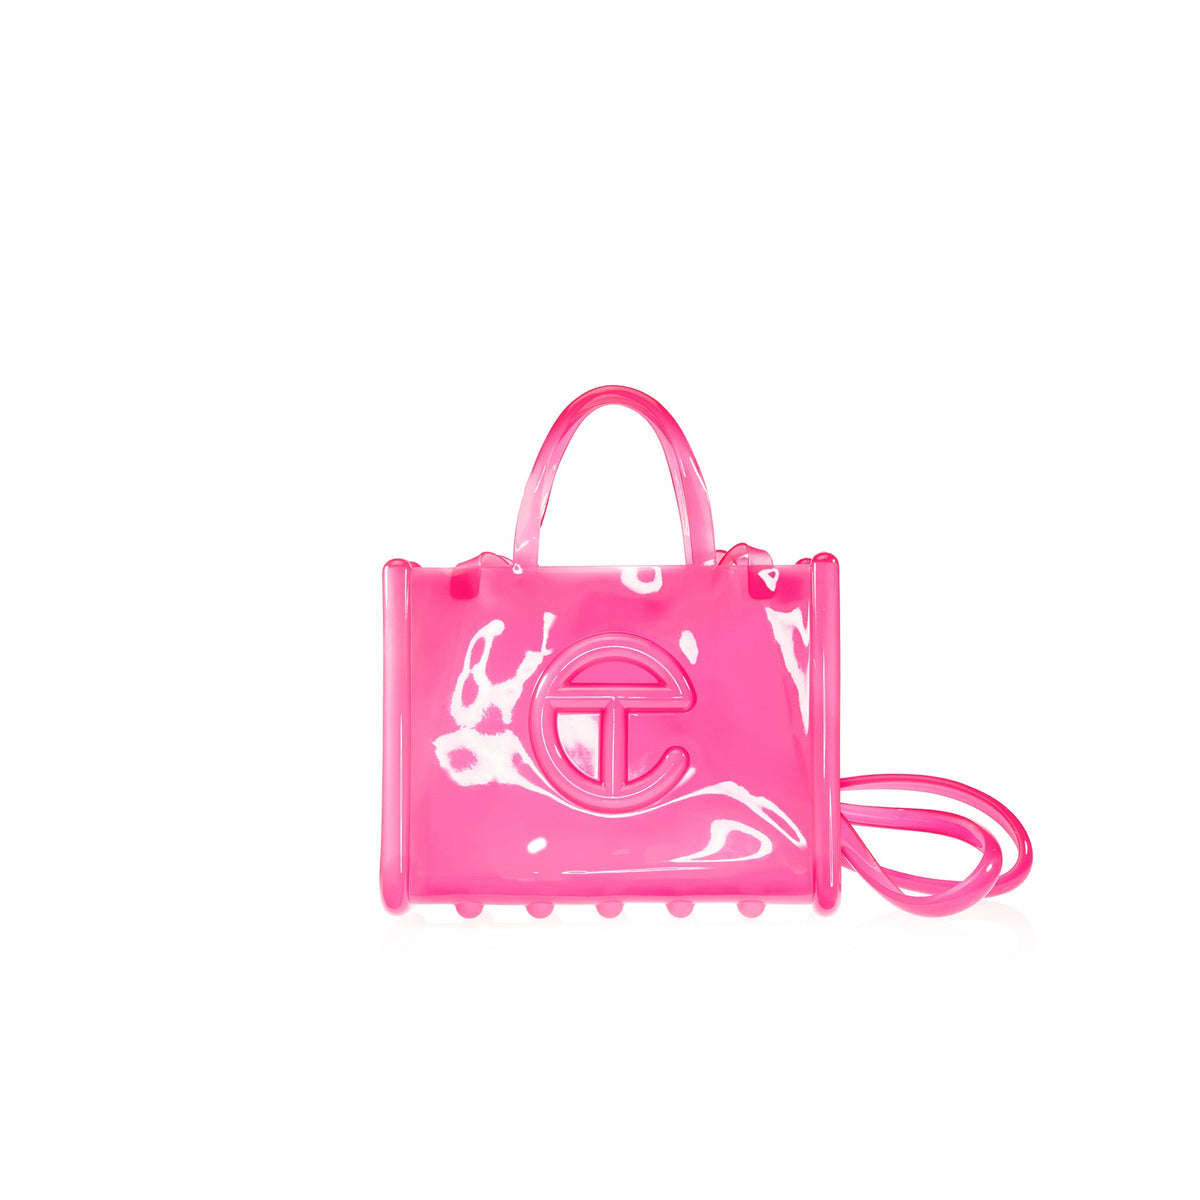 Melissa x Telfar | Medium Jelly Shopper Bag - Clear Pink